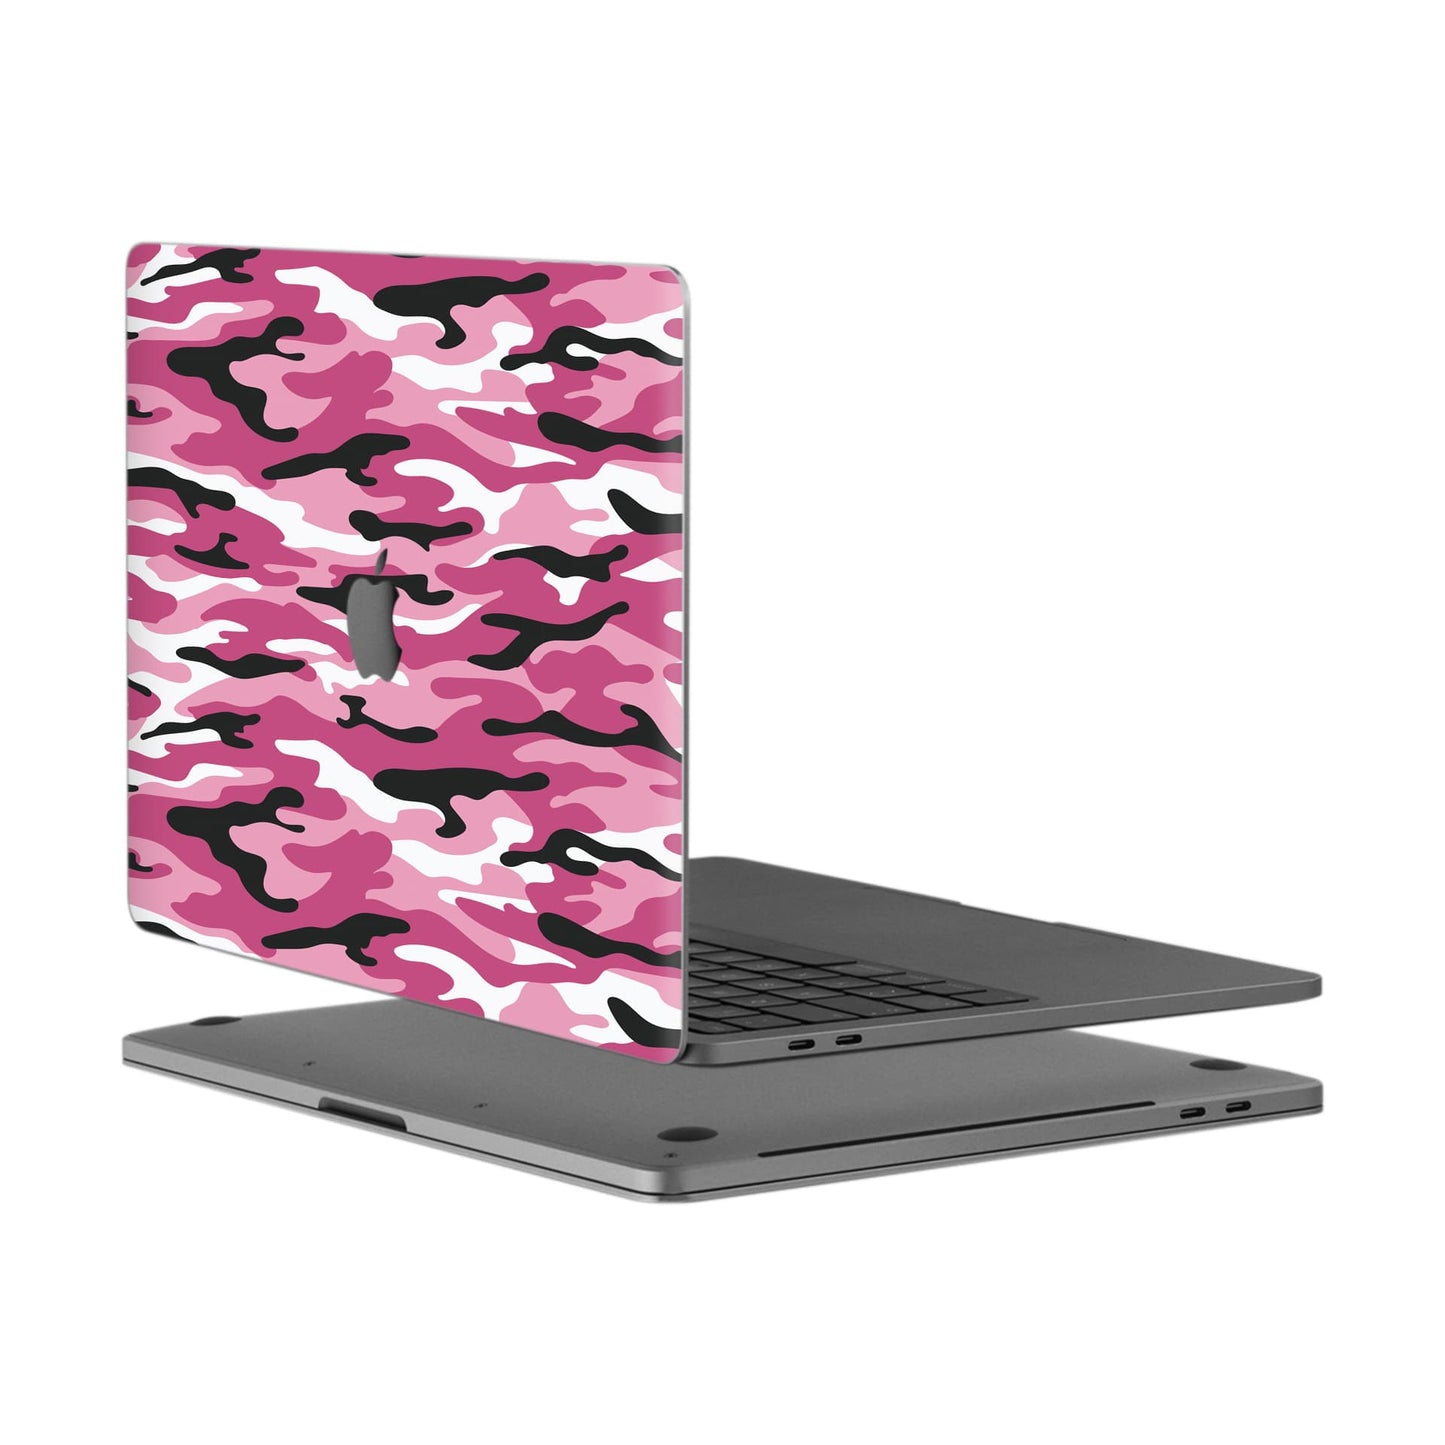 MacBook Pro 13", 2 Thunderbolt Ports (2020) - Camouflage